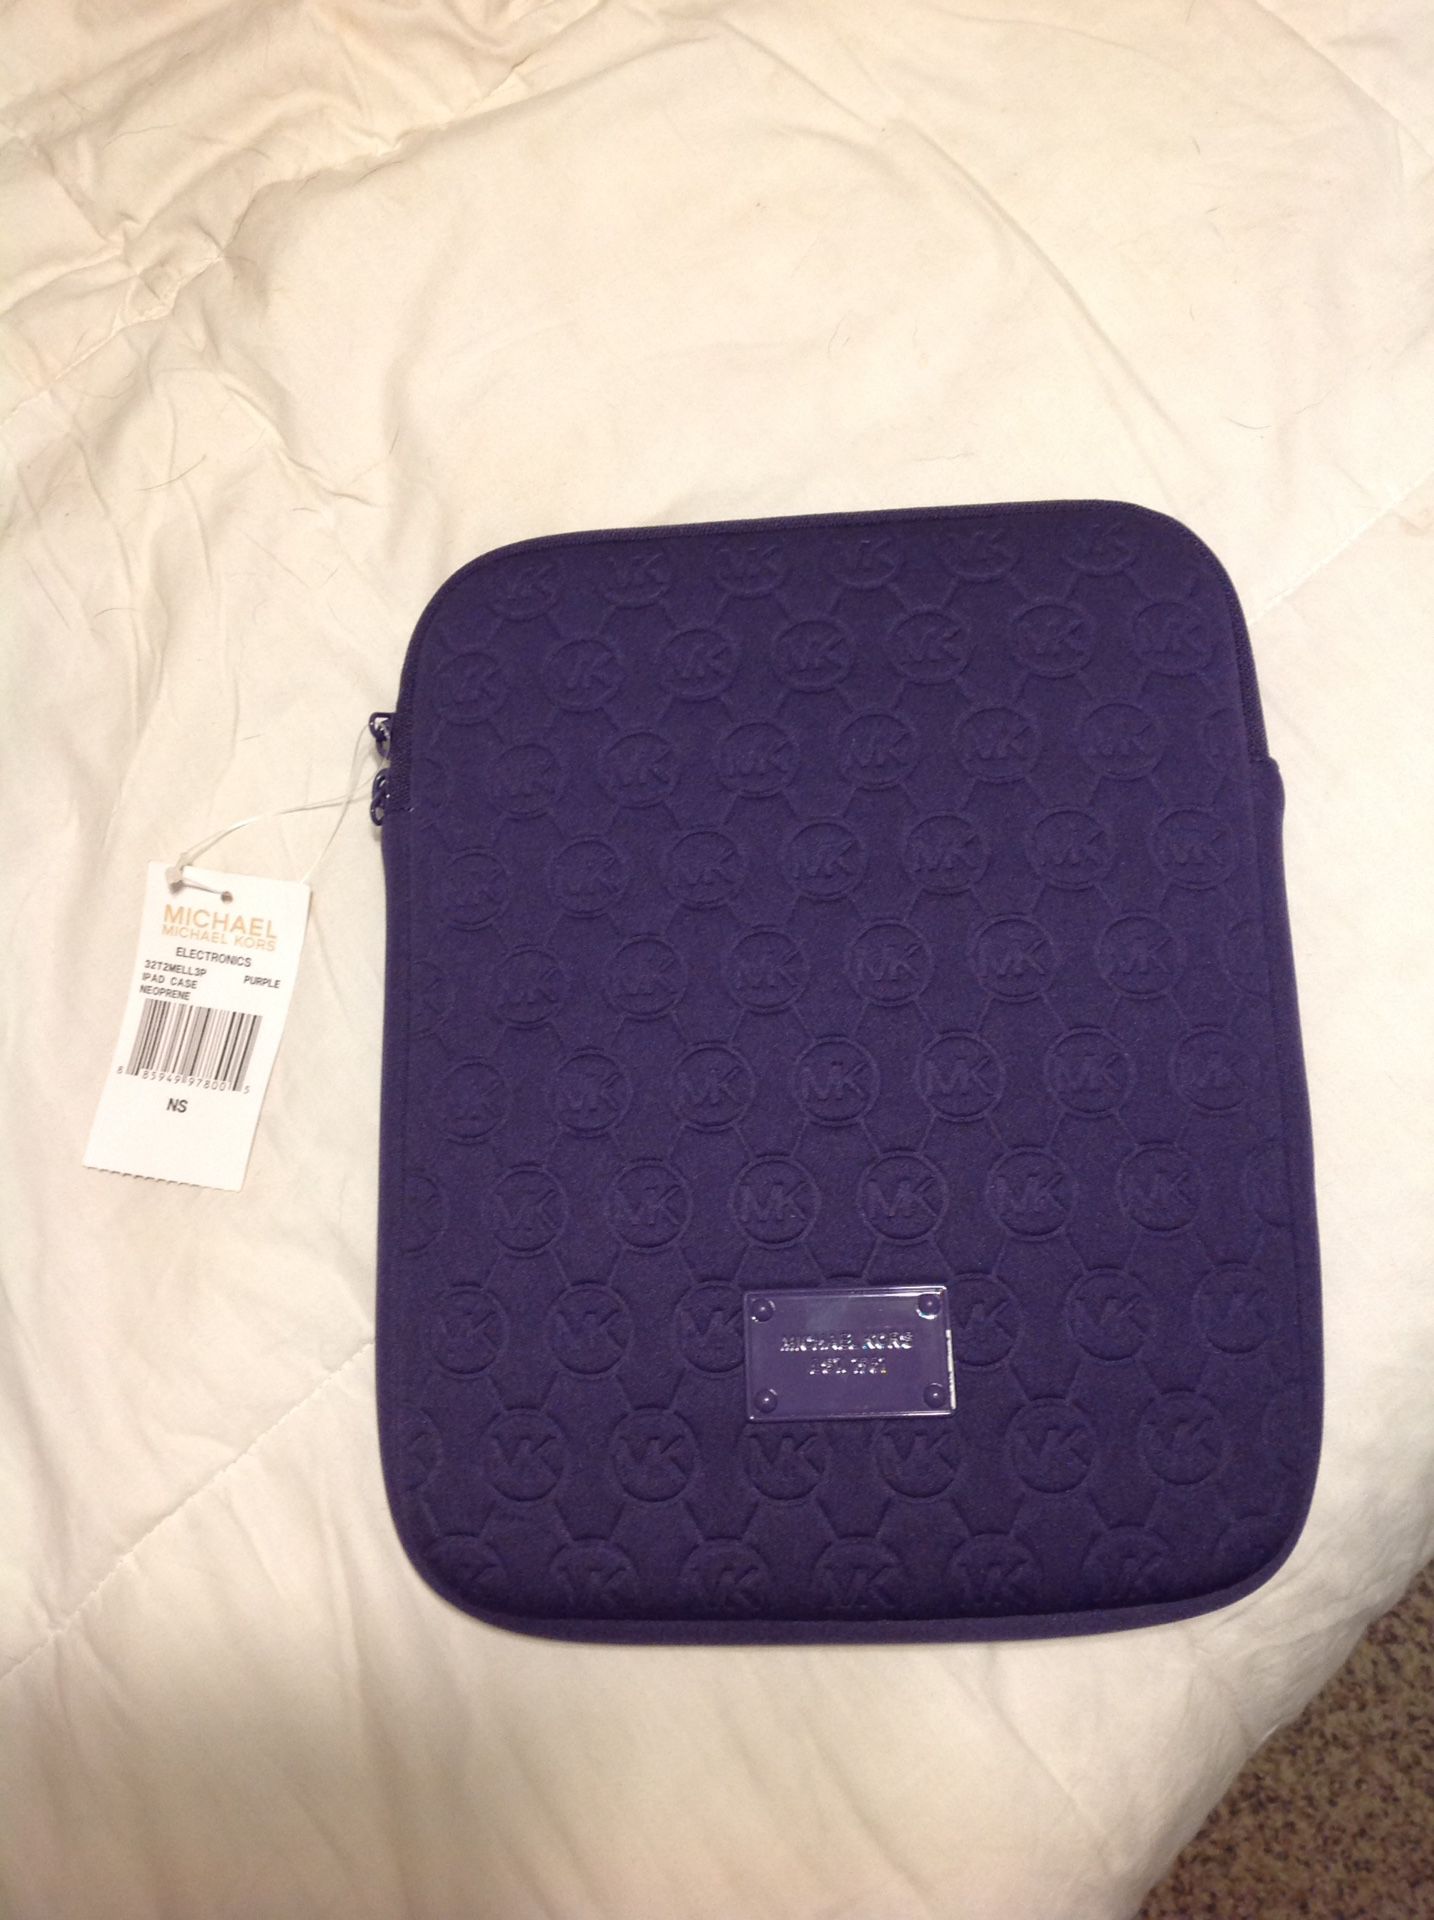 Michael Kors iPad Tablet Case sleeve Purple NWT measures 10x7.5